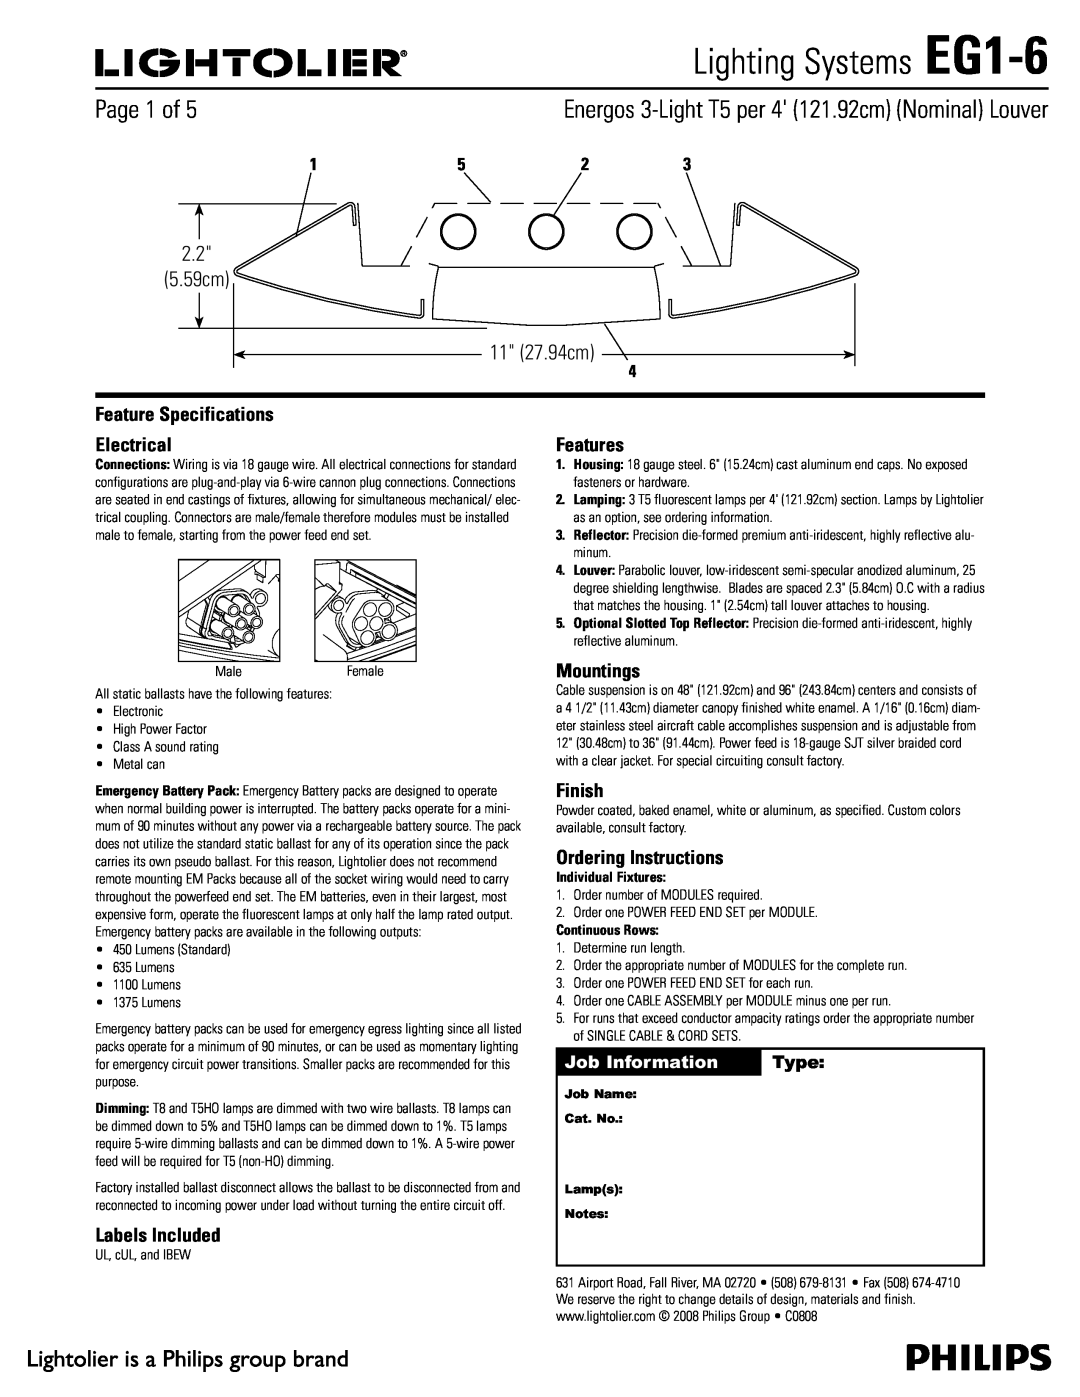 Lightolier specifications Lighting Systems EG1-6,  Dn  Dn, Job Information, Type 